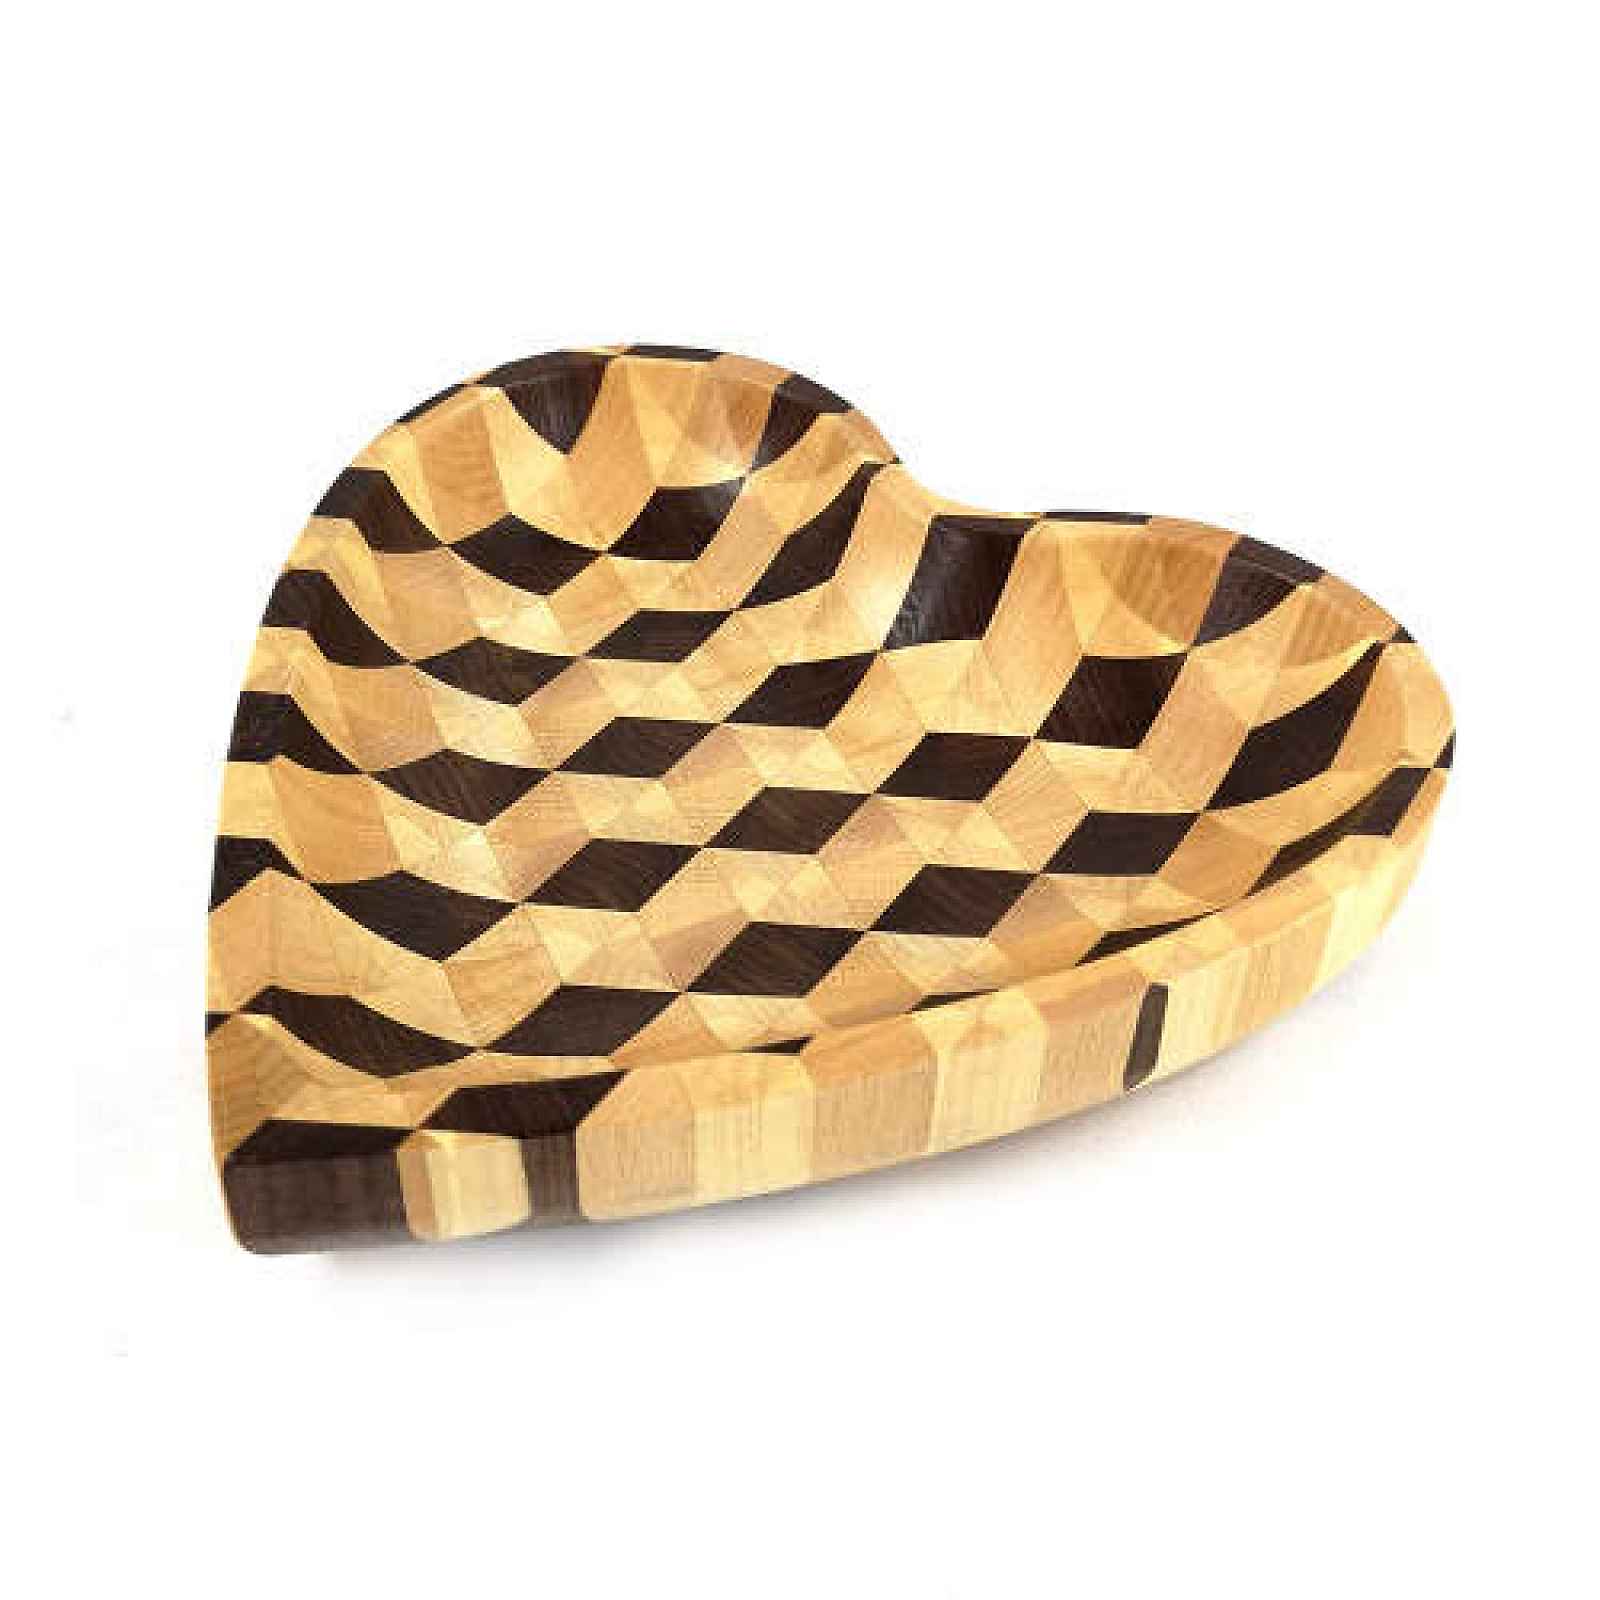 Miska tvar srdce dekor mozaika dřevo hnědá/přírodní 25cm